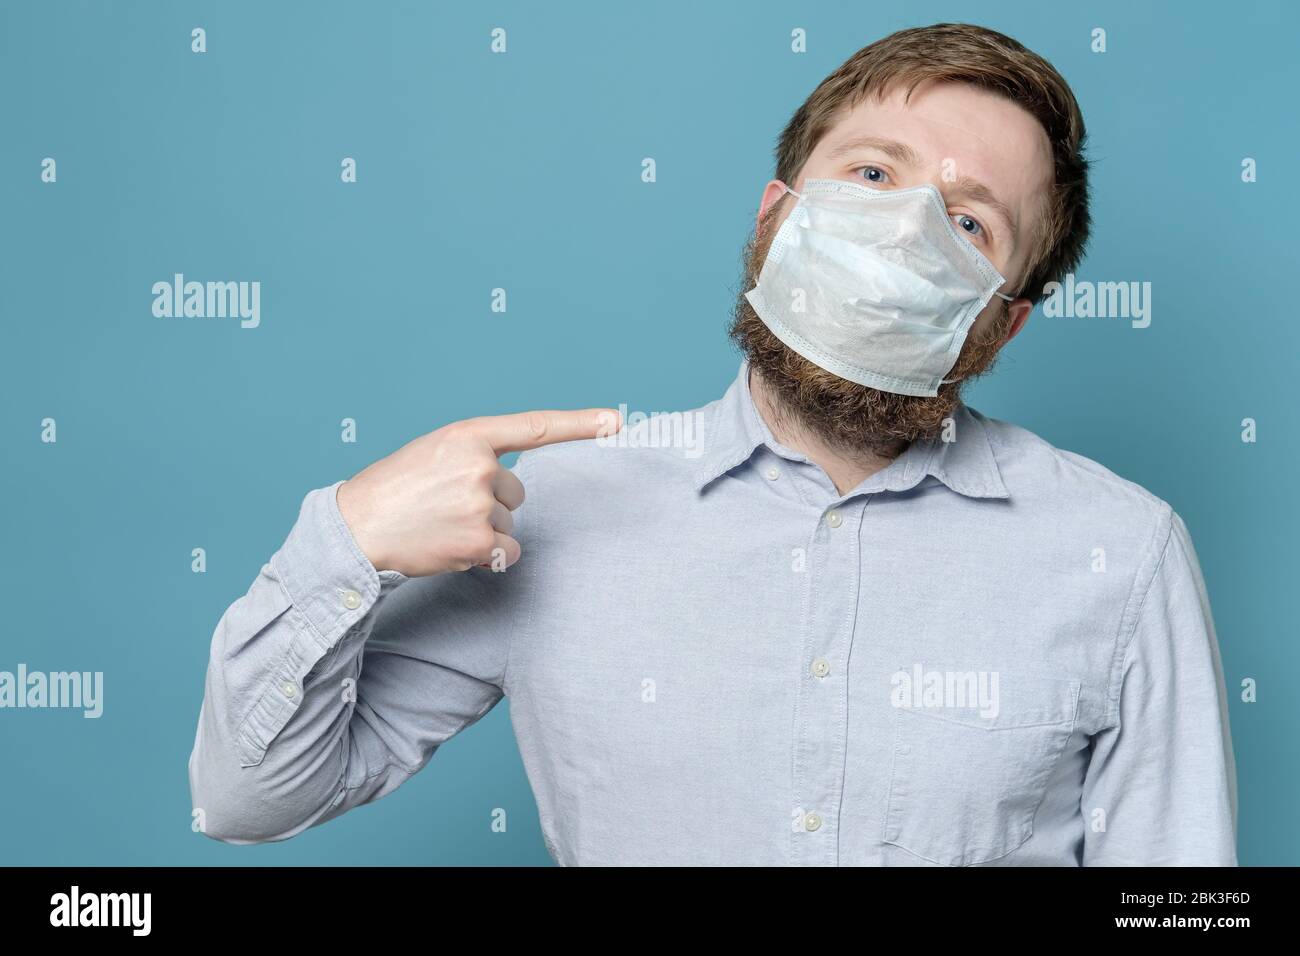 L'uomo punta il dito indice alla maschera medica sul suo viso, che non è aderente a causa della barba agile. Concetto di quarantena. Foto Stock